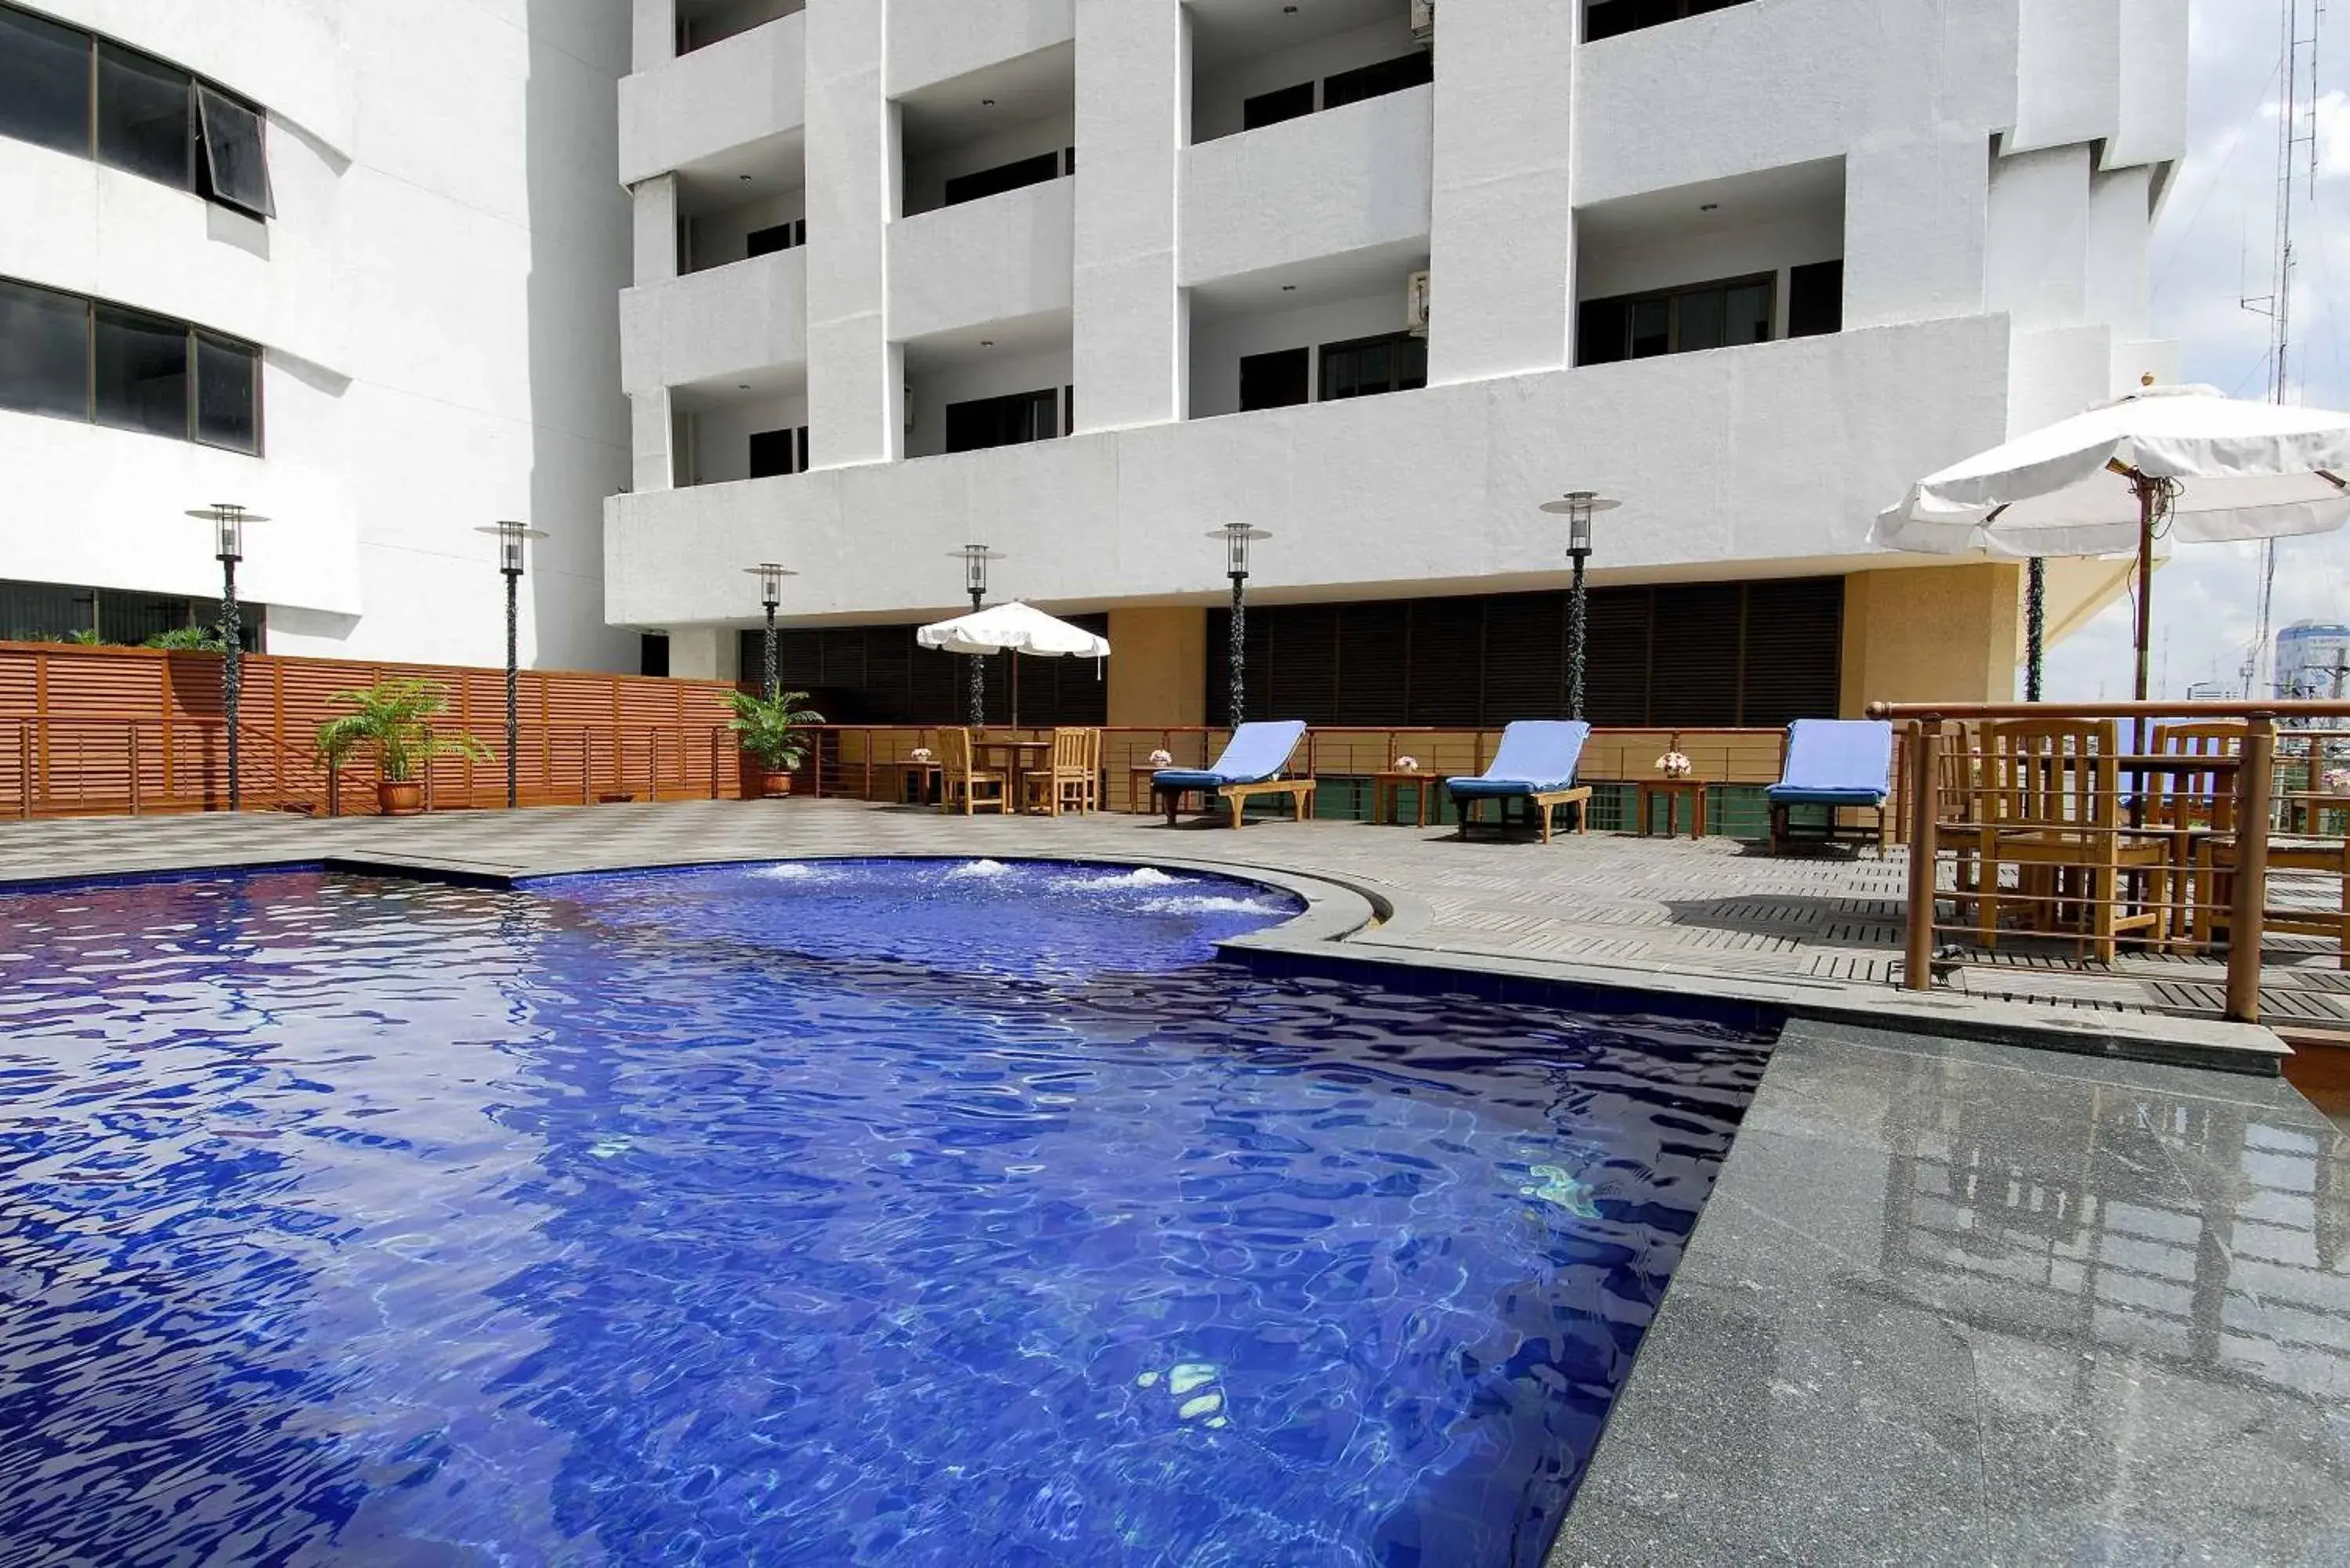 Swimming Pool in Princeton Bangkok Hotel